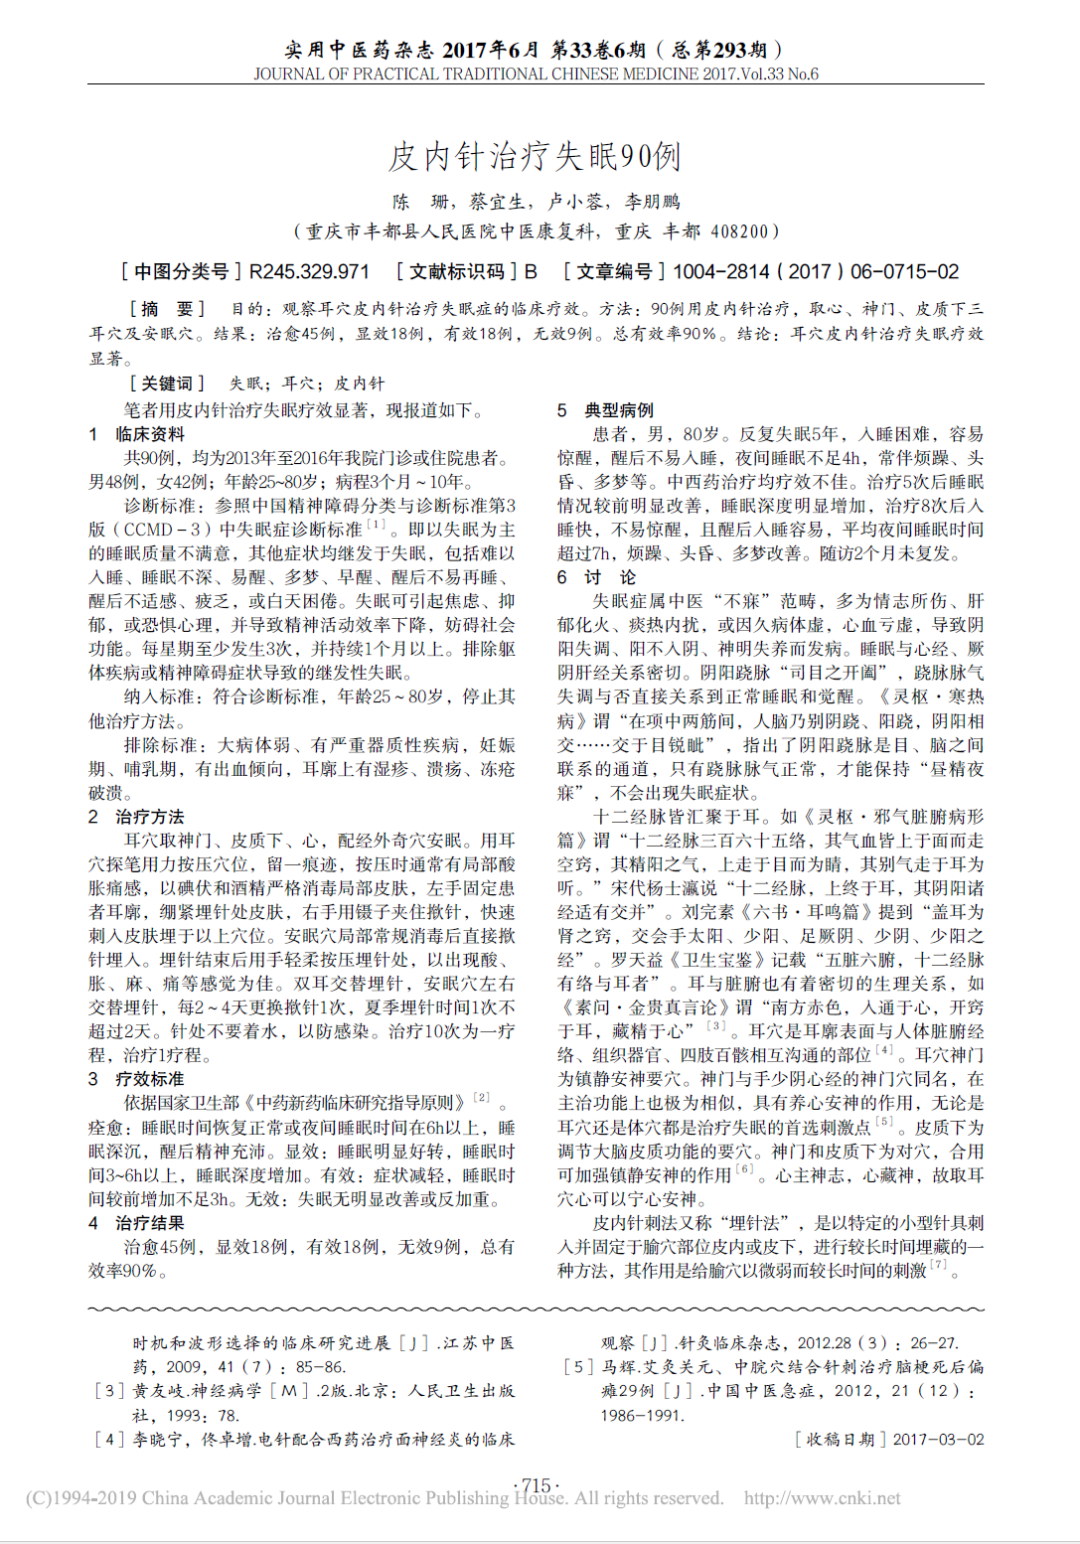 皮内针治疗失眠90例——实用中医杂志 2017年6月 第33卷第6期（总第293期）